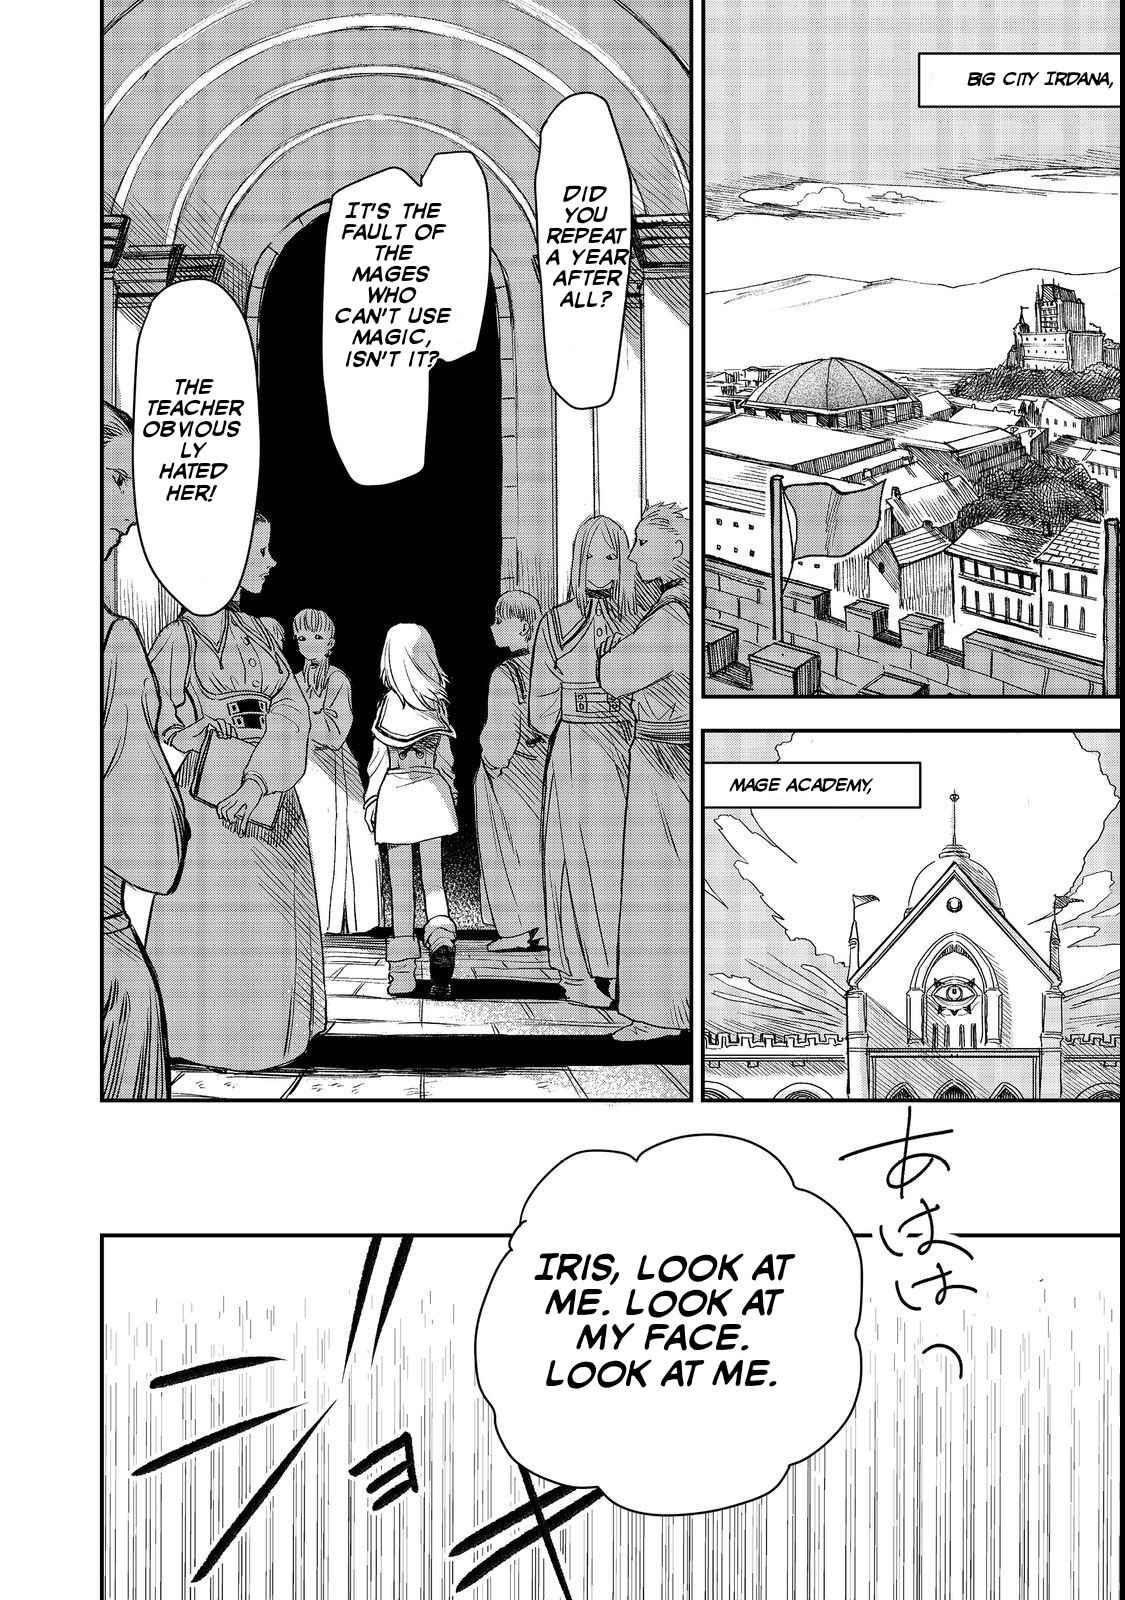 Meiou-sama ga Tooru no desu yo! (Light Novel) Manga